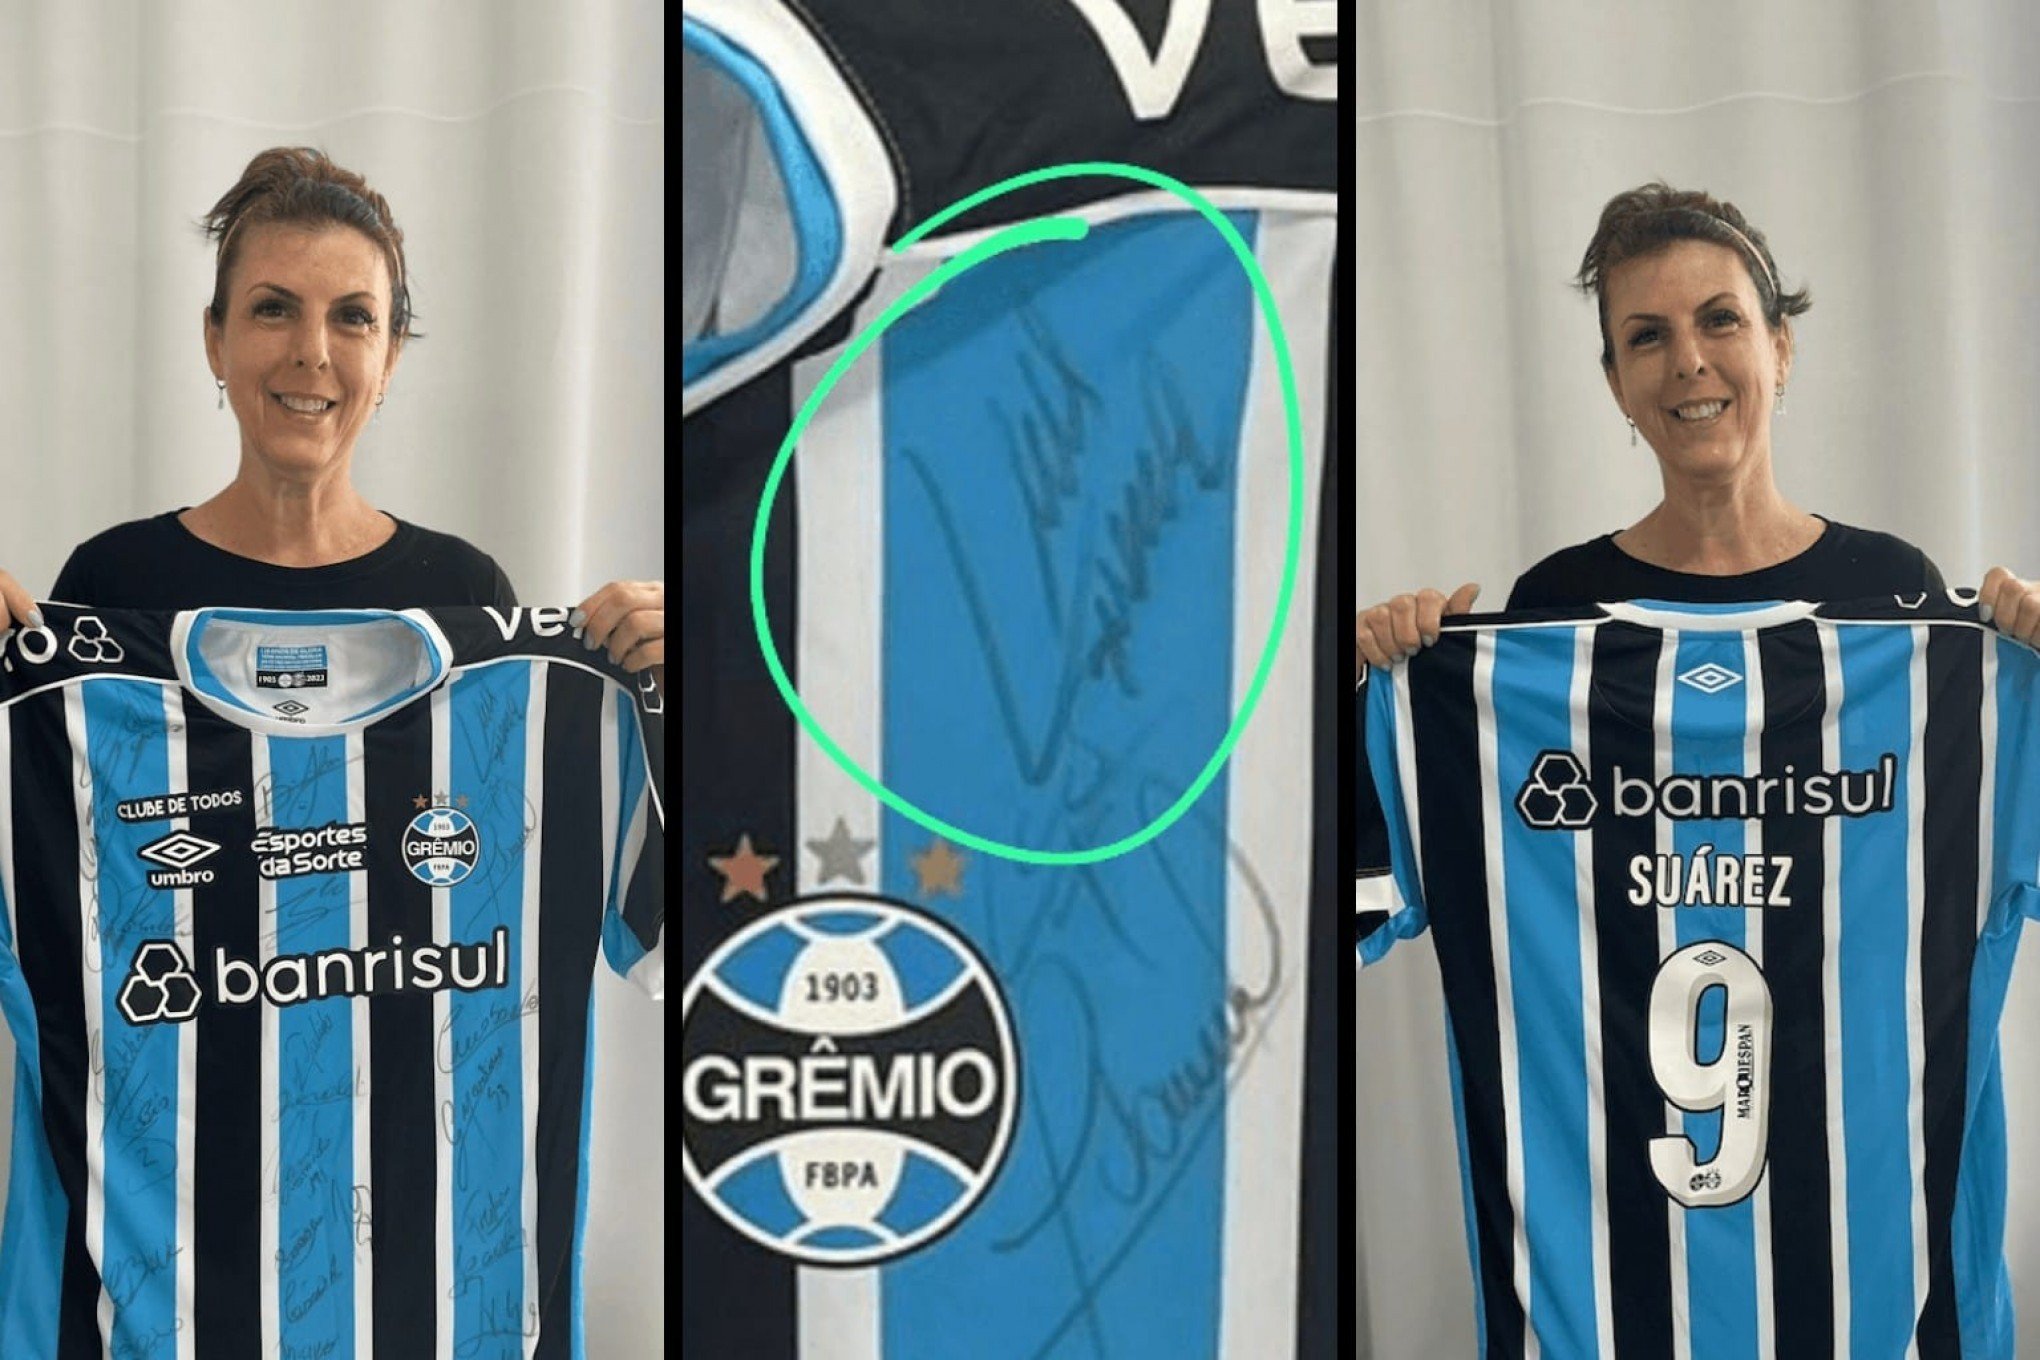 Camisa autografada por Suárez é sorteada para ajudar professora na luta contra o câncer